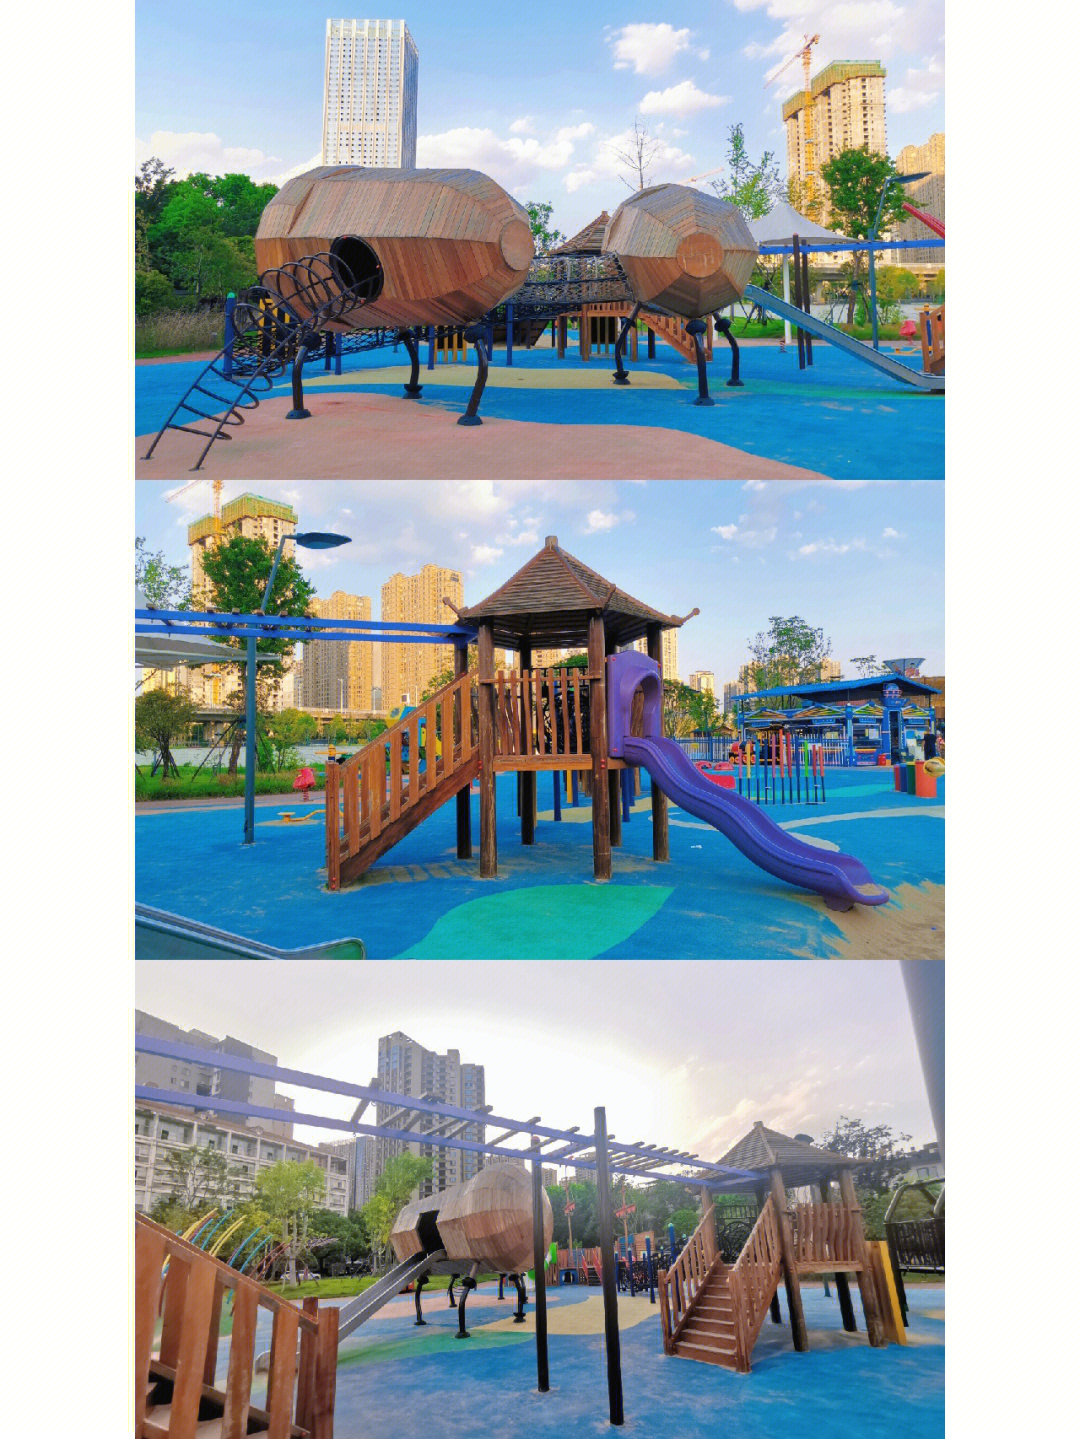 长沙最大的儿童乐园图片